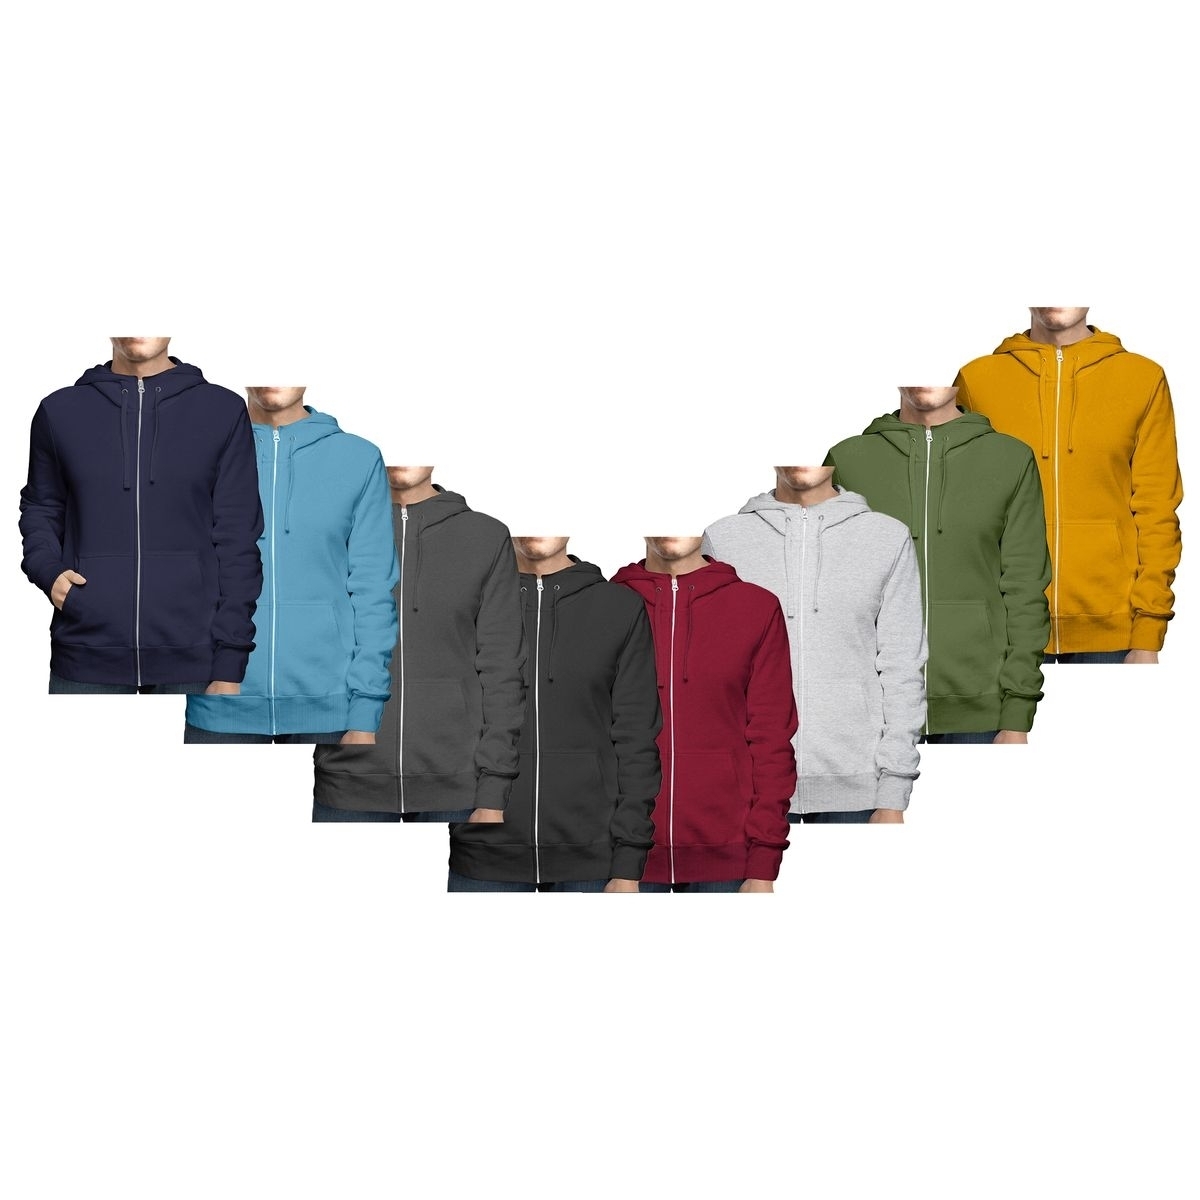 Men's Winter Warm Cozy Full Zip-Up Fleece Lined Soft Hoodie Sweatshirt - Charcoal, X-large